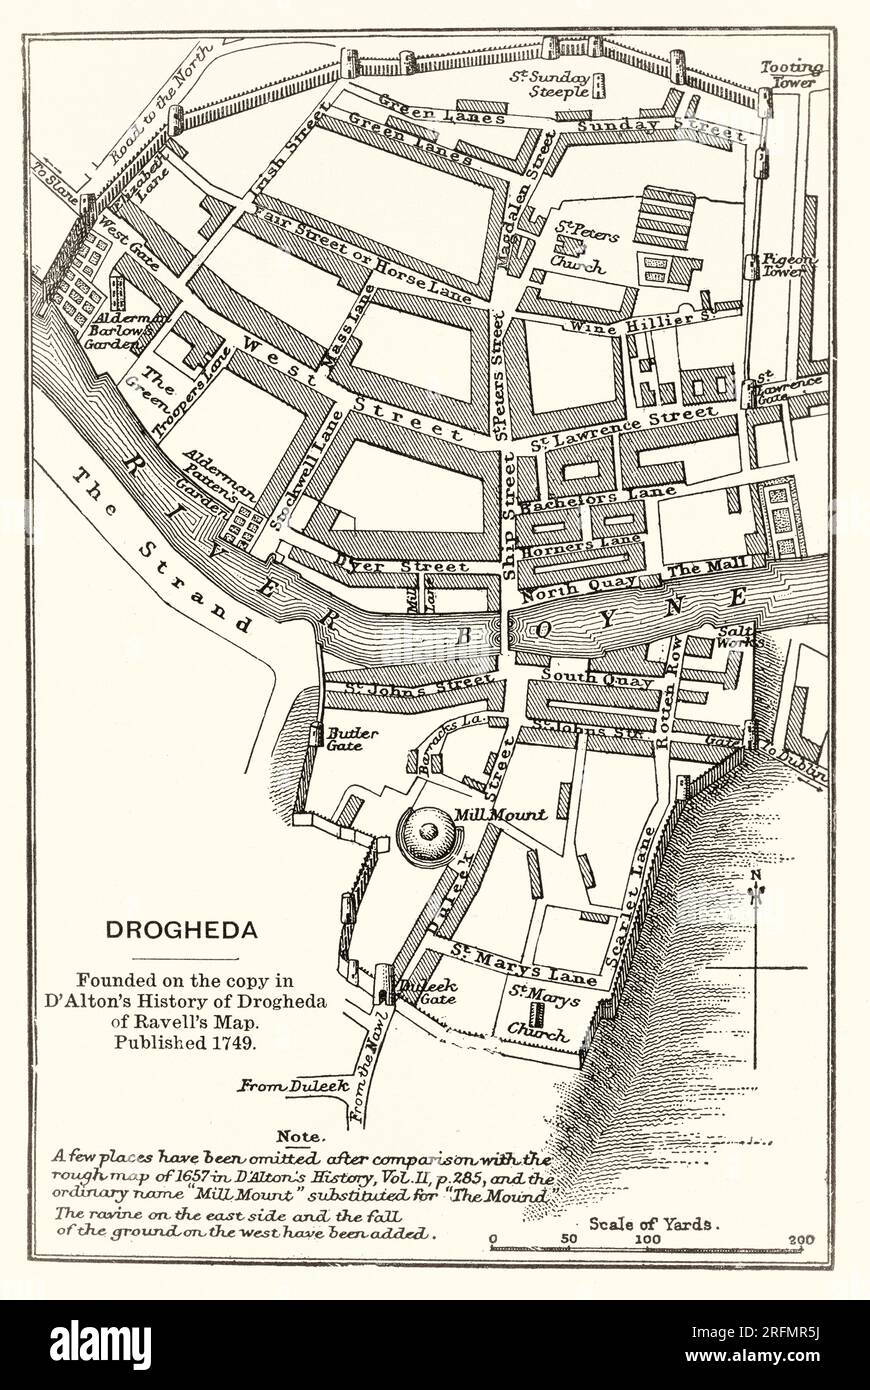 Un piano del XVII secolo dell'assedio di Drogheda che ebbe luogo nel settembre 1649, all'inizio della conquista cromwelliana dell'Irlanda. La città costiera di Drogheda era tenuta da una guarnigione mista di cattolici irlandesi e realisti sotto il comando di Sir Arthur Aston, quando fu assediata dalle forze inglesi del Commonwealth sotto Oliver Cromwell. Dopo che Aston rifiutò l'invito alla resa, la città fu assalita e gran parte della guarnigione fu giustiziata, insieme a un numero sconosciuto ma significativo di civili. L'assedio è ancora visto come un'atrocità che influisce sulla reputazione di Cromwell. Foto Stock